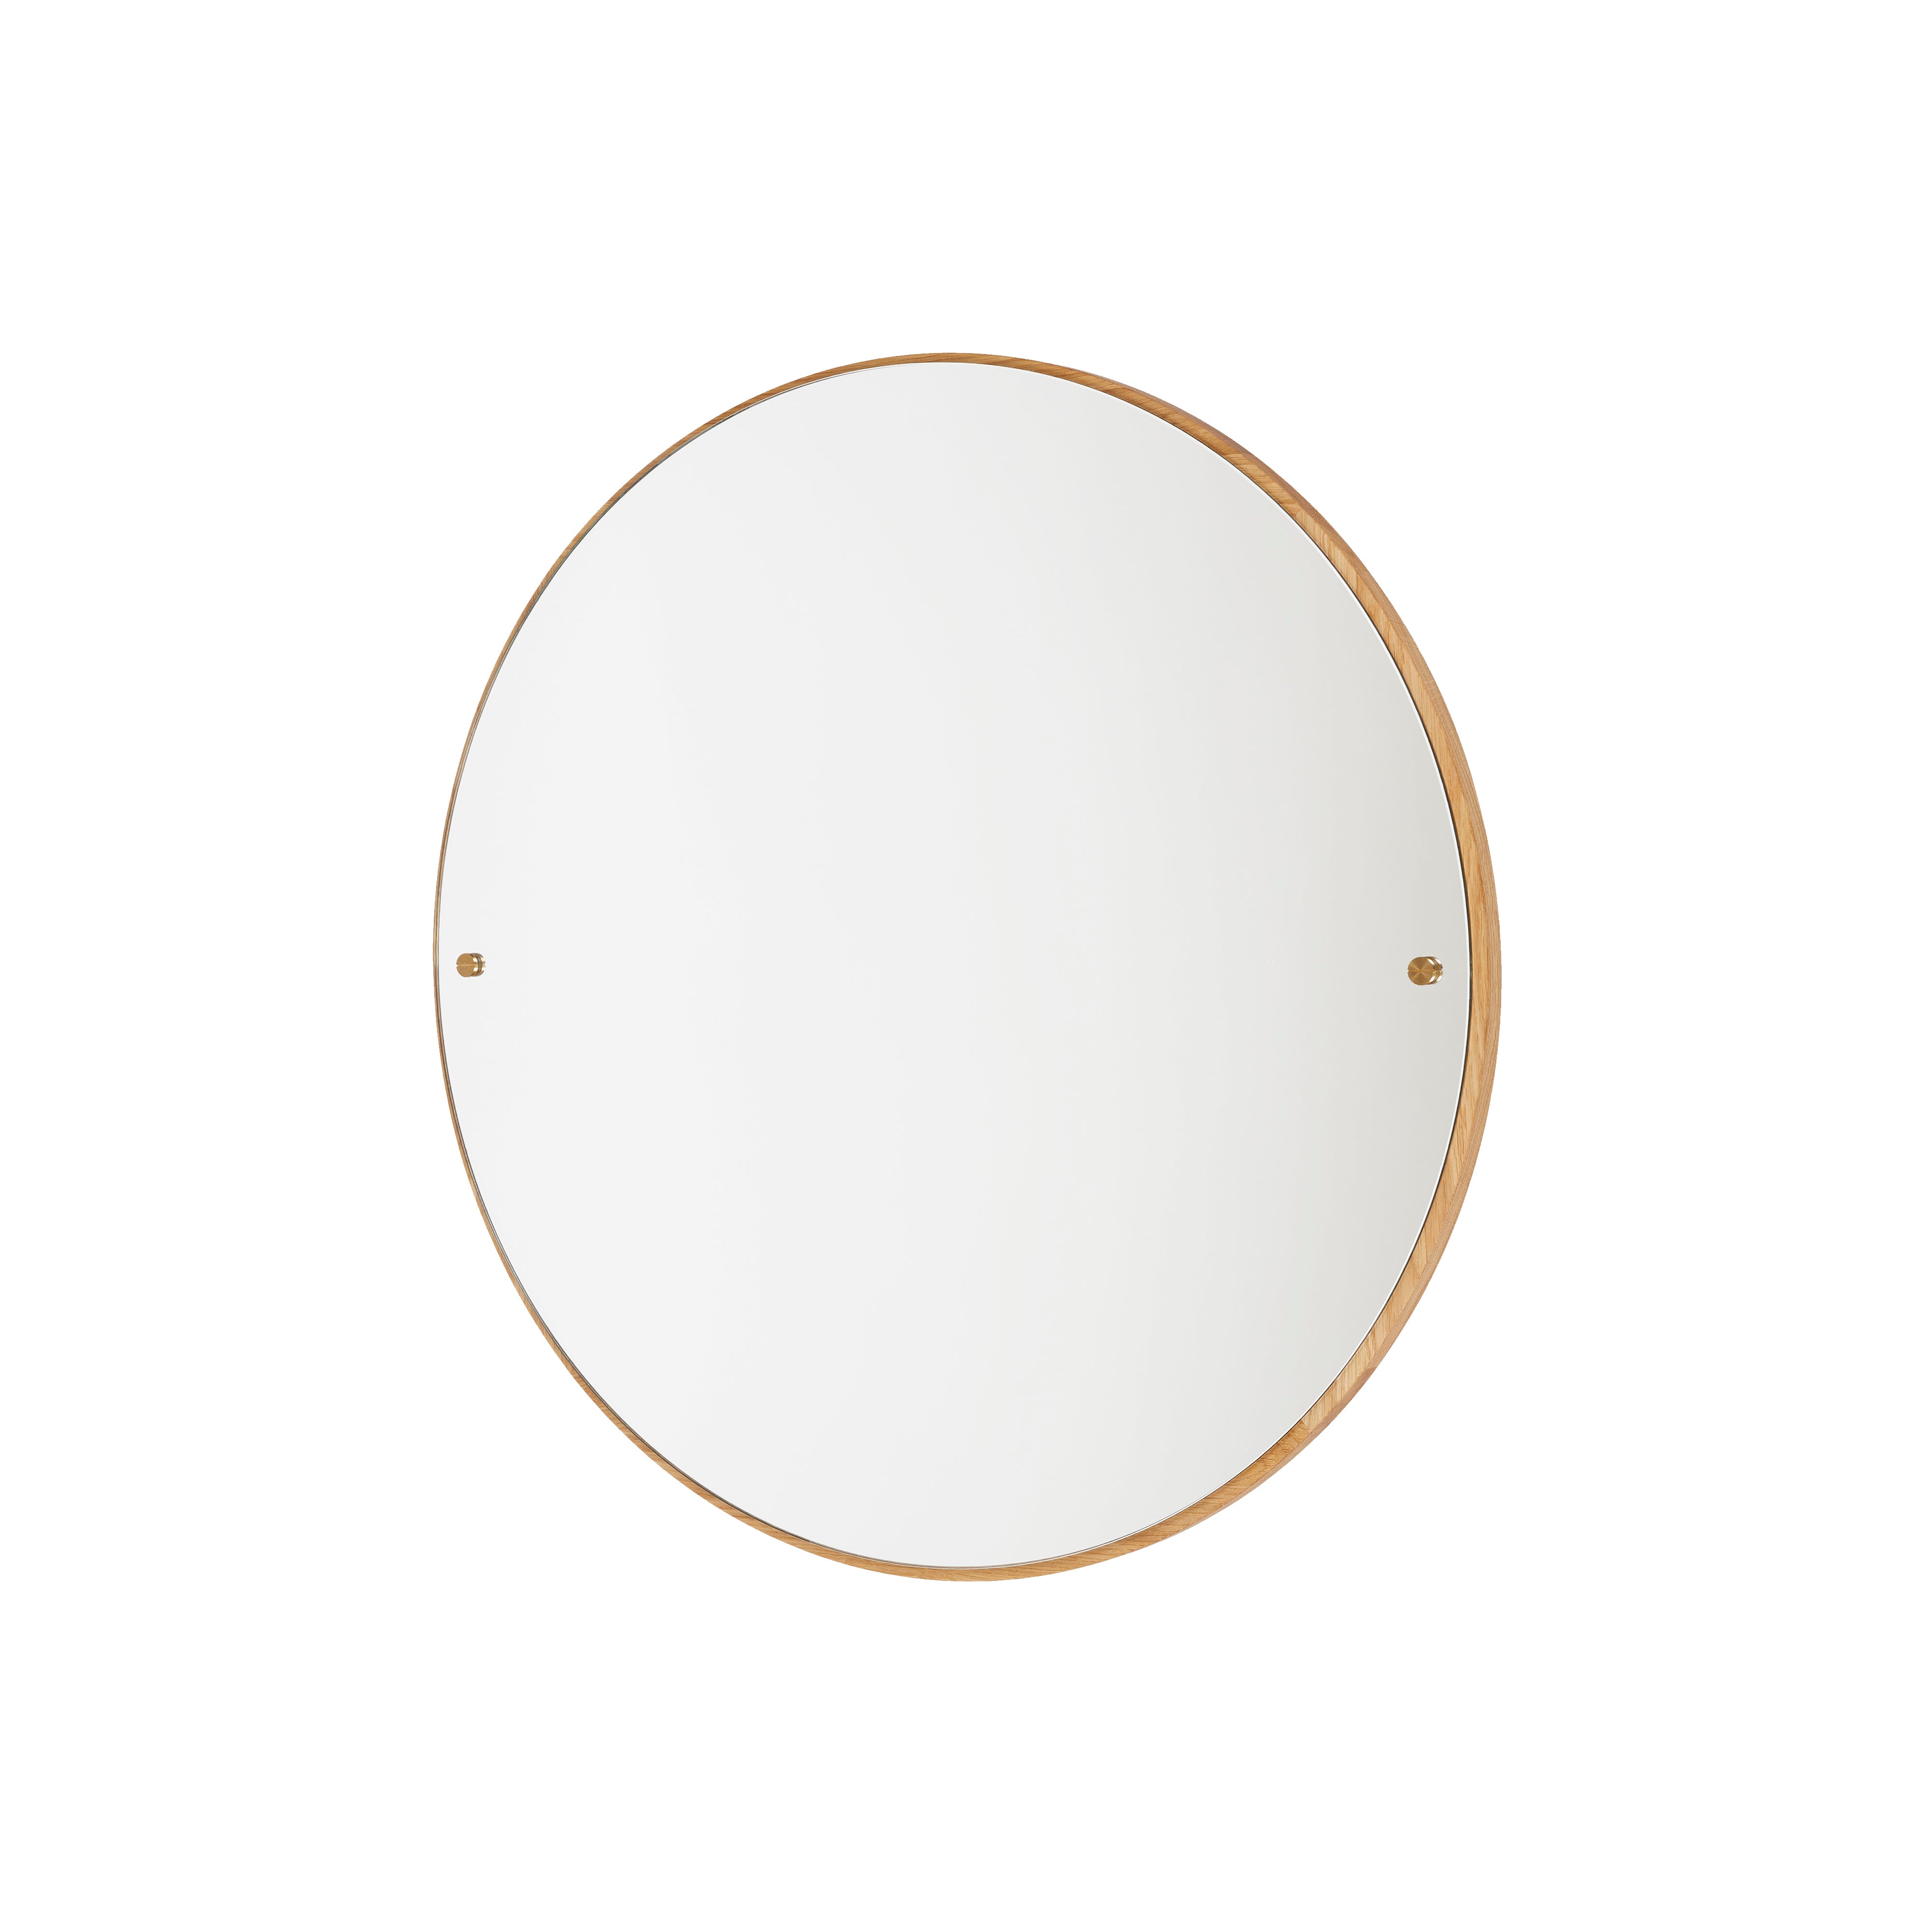 CM-1 Circle Mirror: Large - 29.5